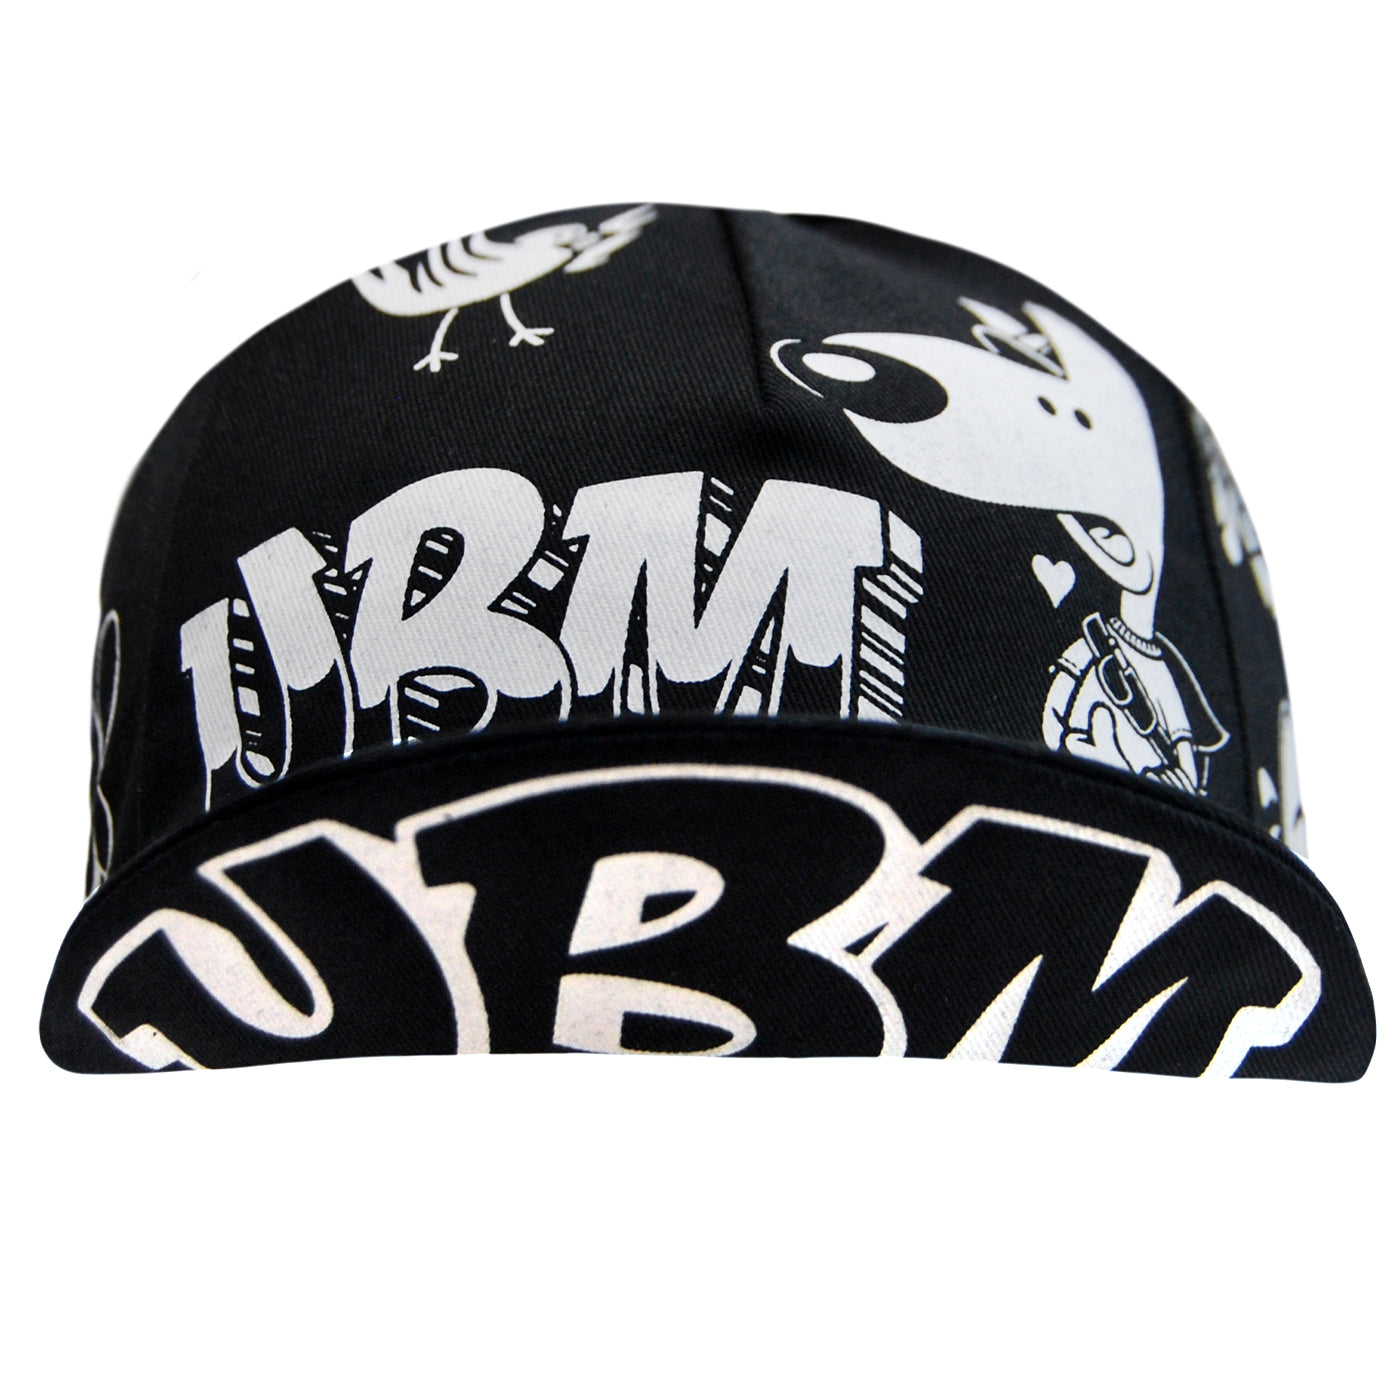 Headdy x UBM 15th anniversary cycling cap - Black